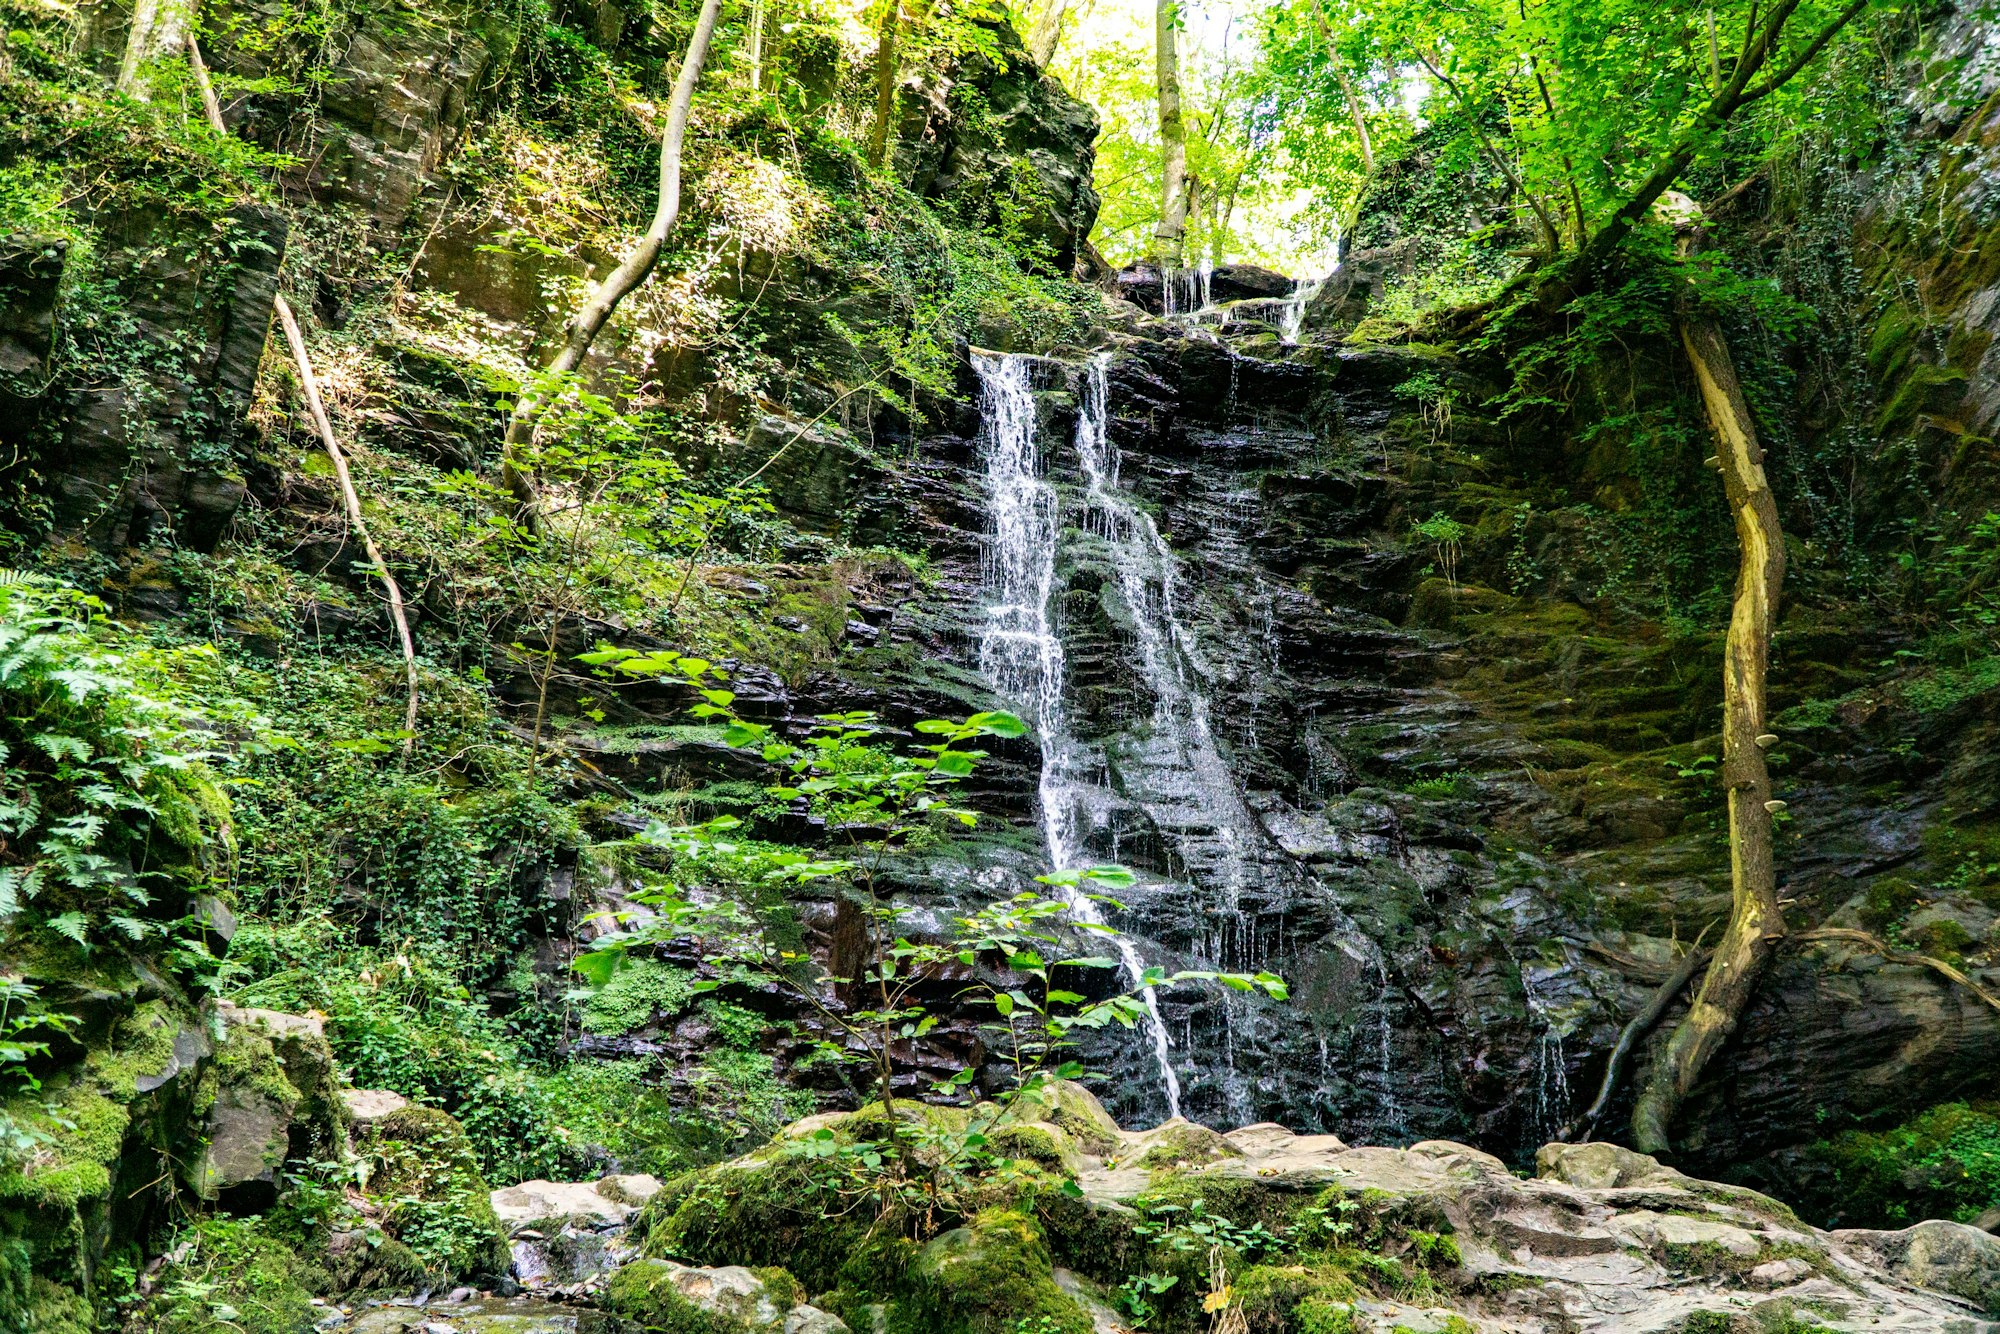 Klidinger Wasserfall in der Eifel.